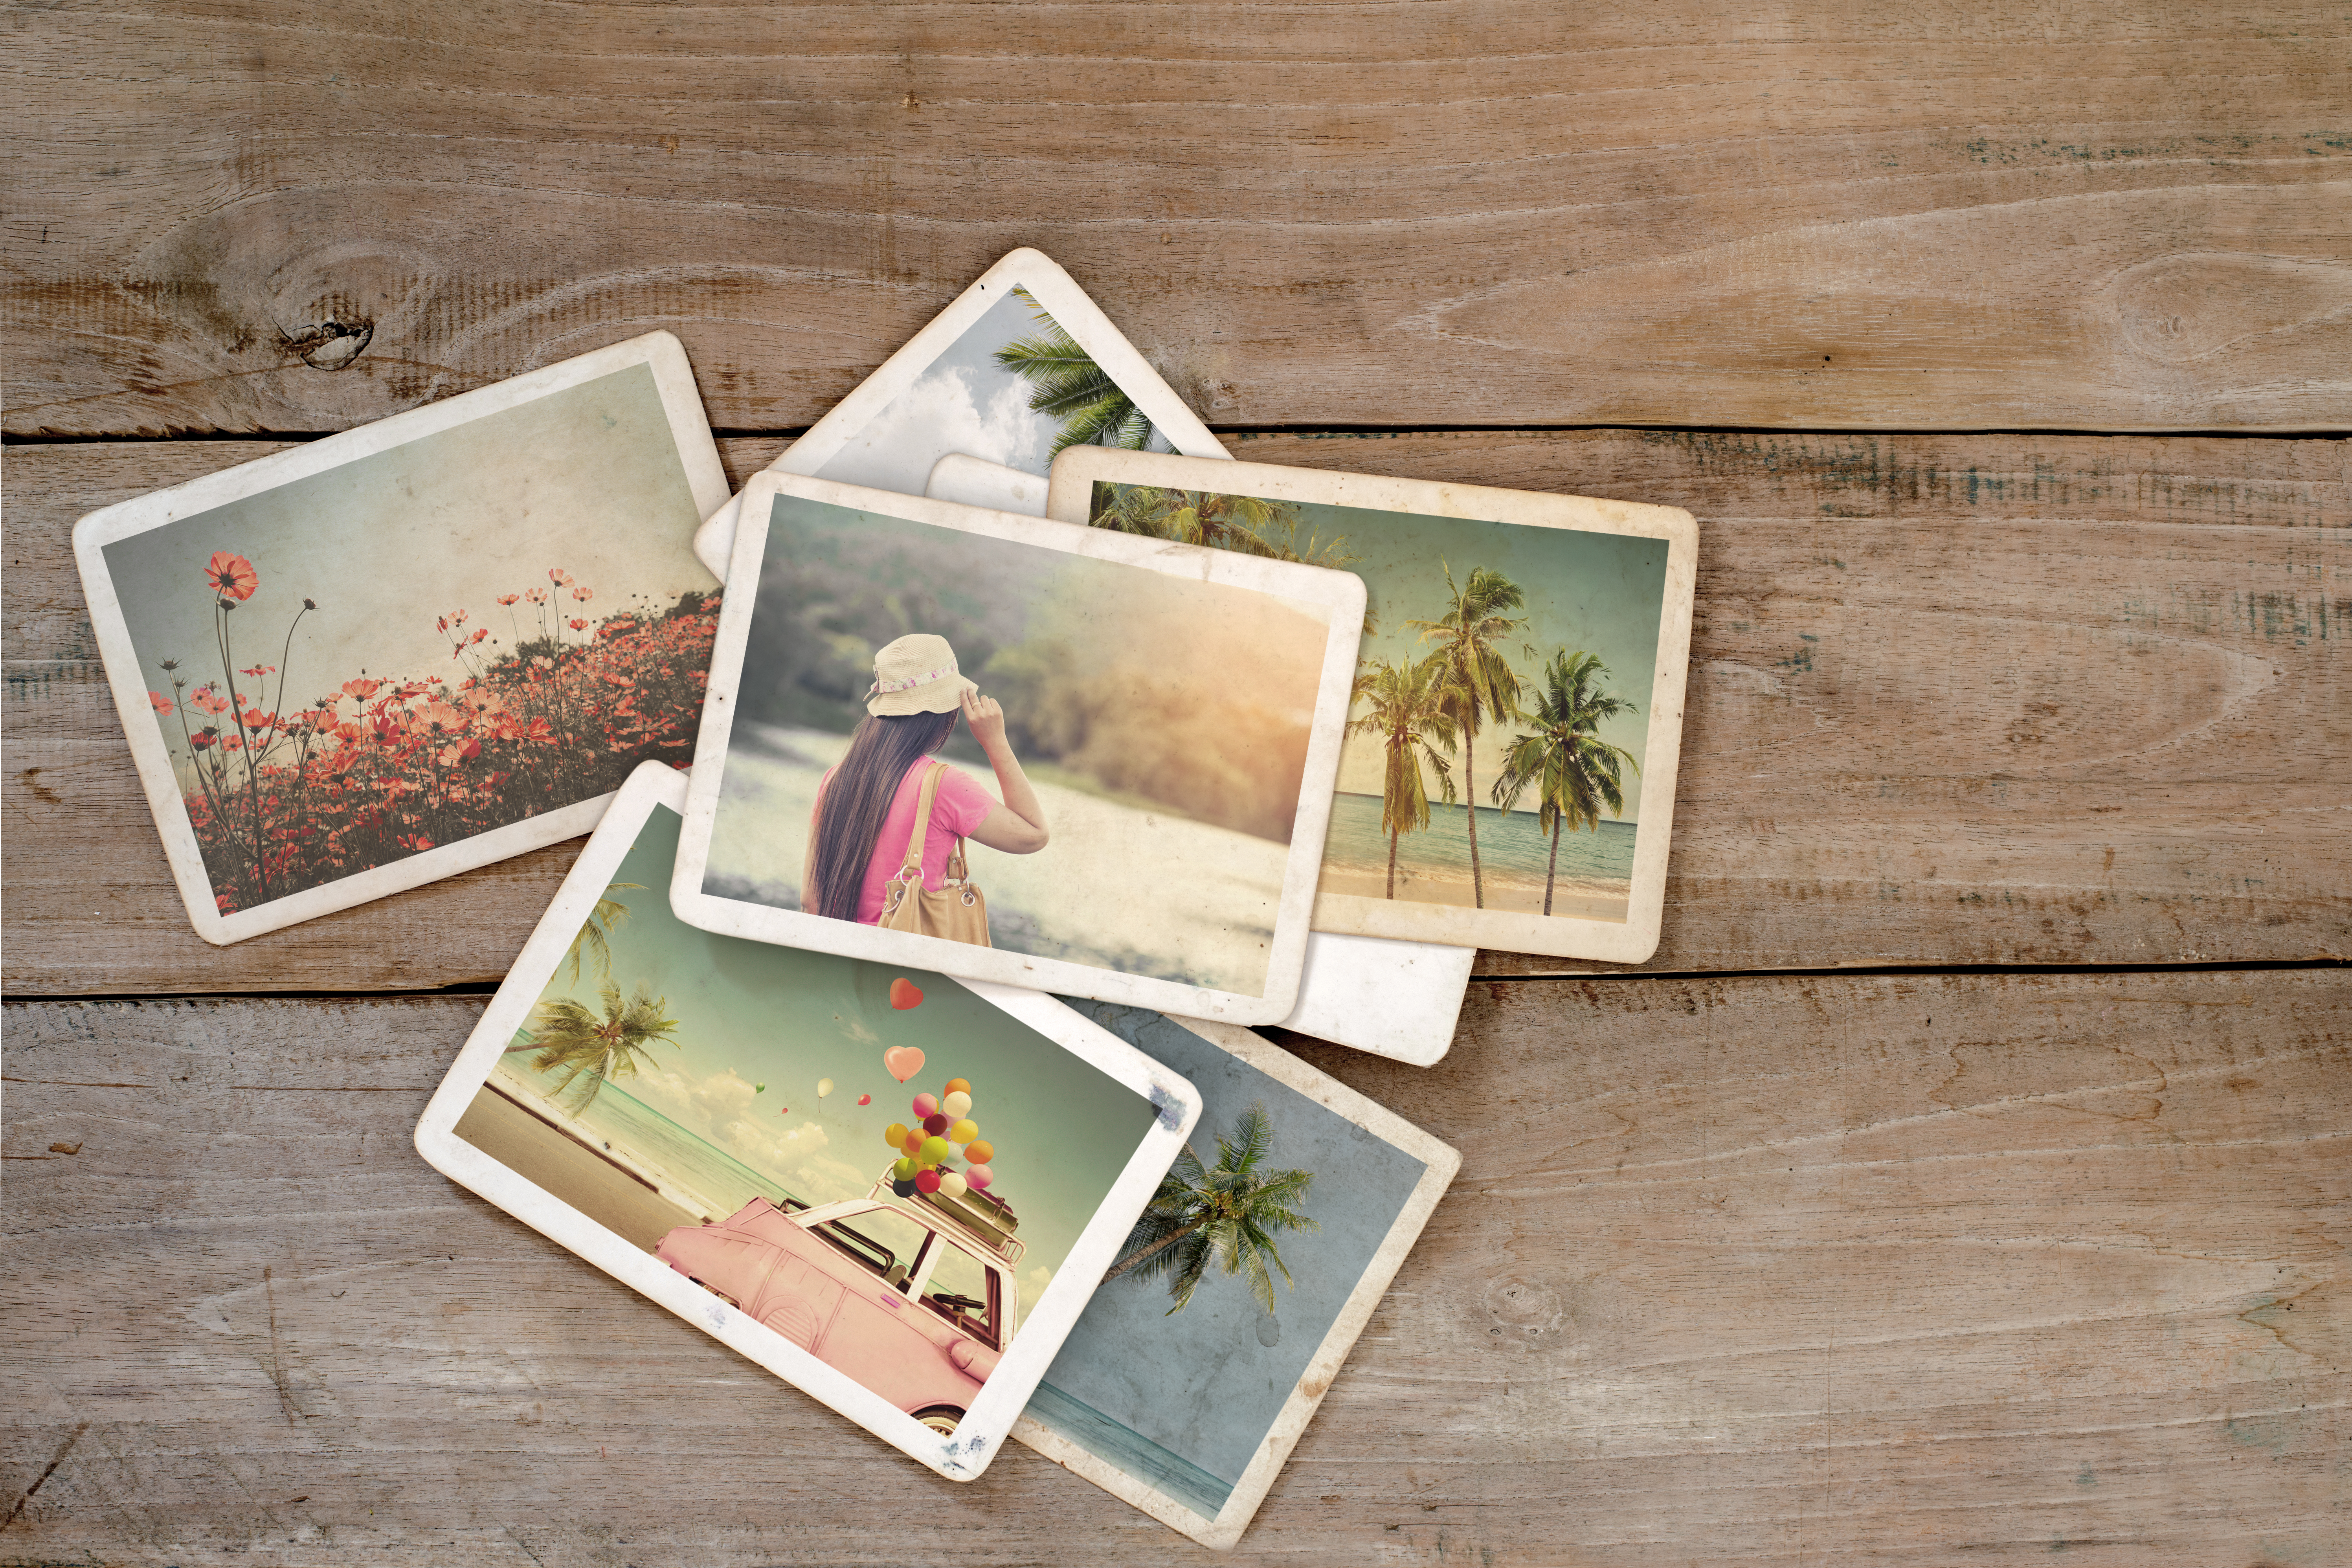 Álbum de fotos de verano | Fuente: Shutterstock